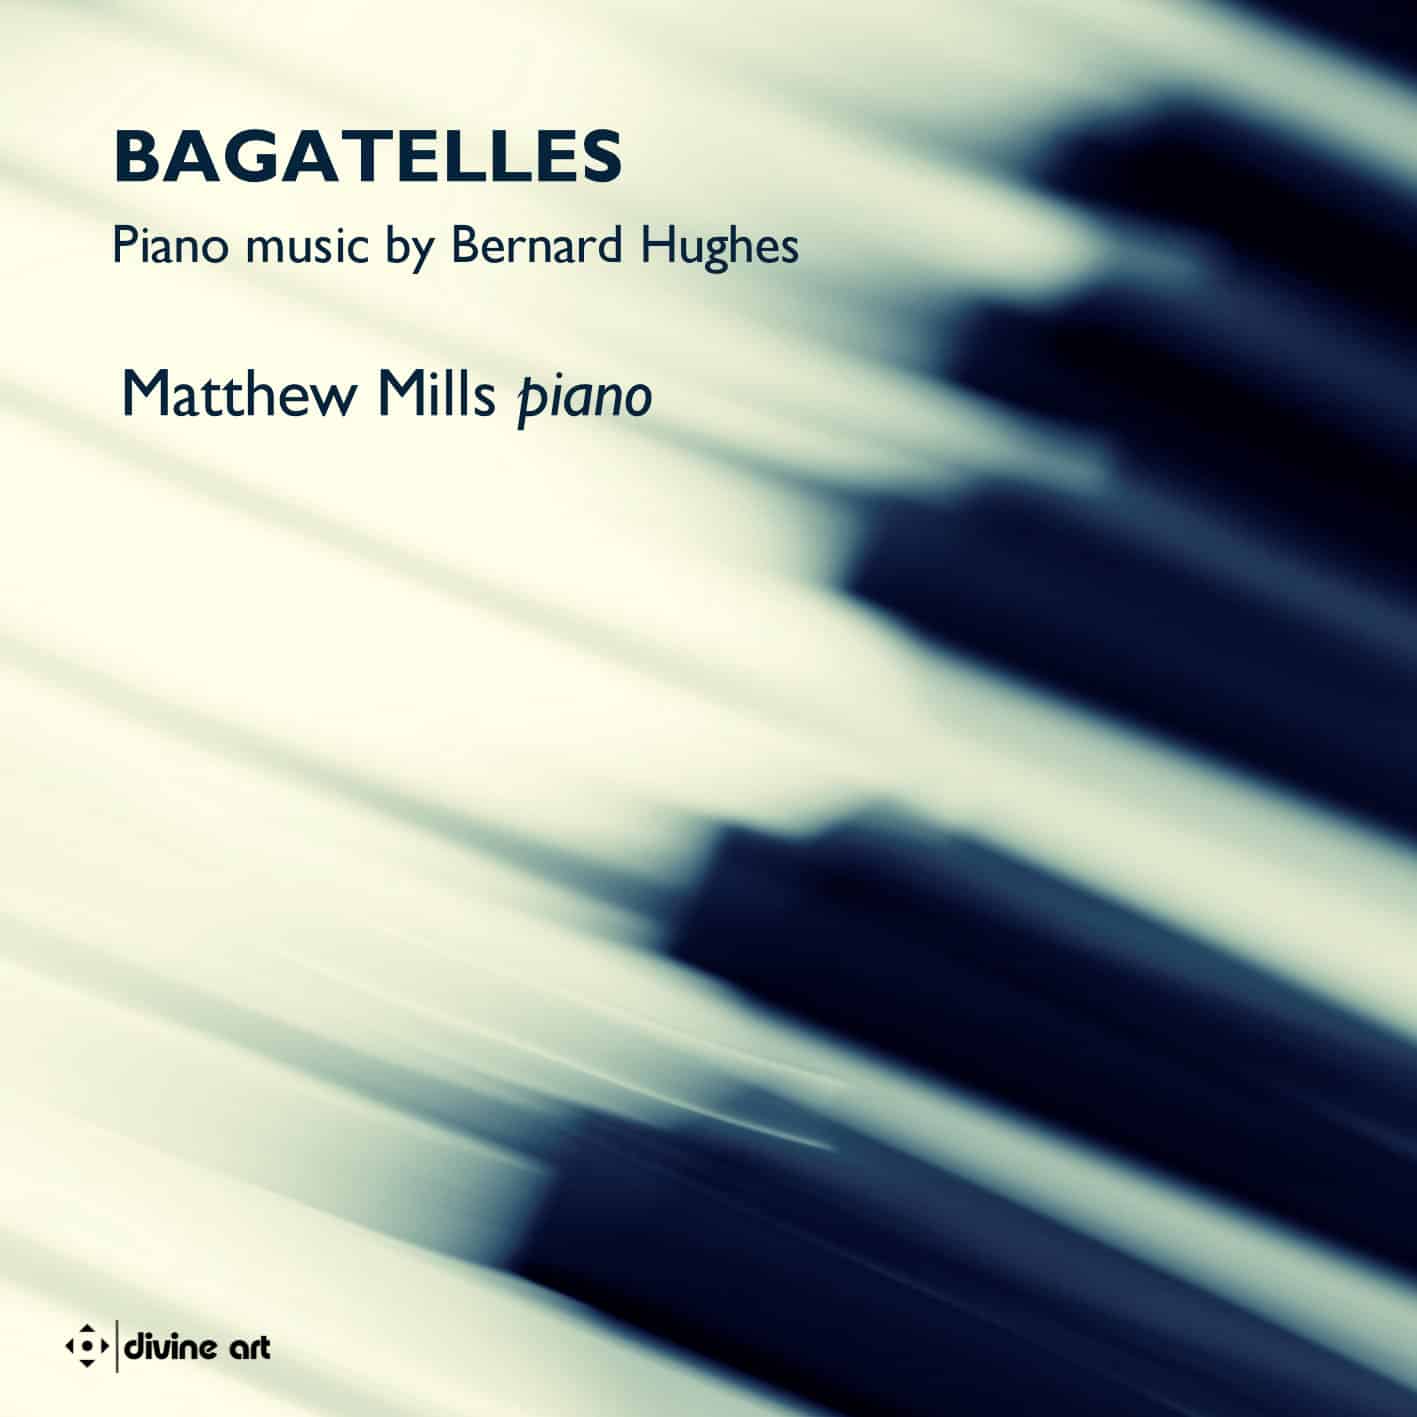 Bagatelles – Piano music by Bernard Hughes